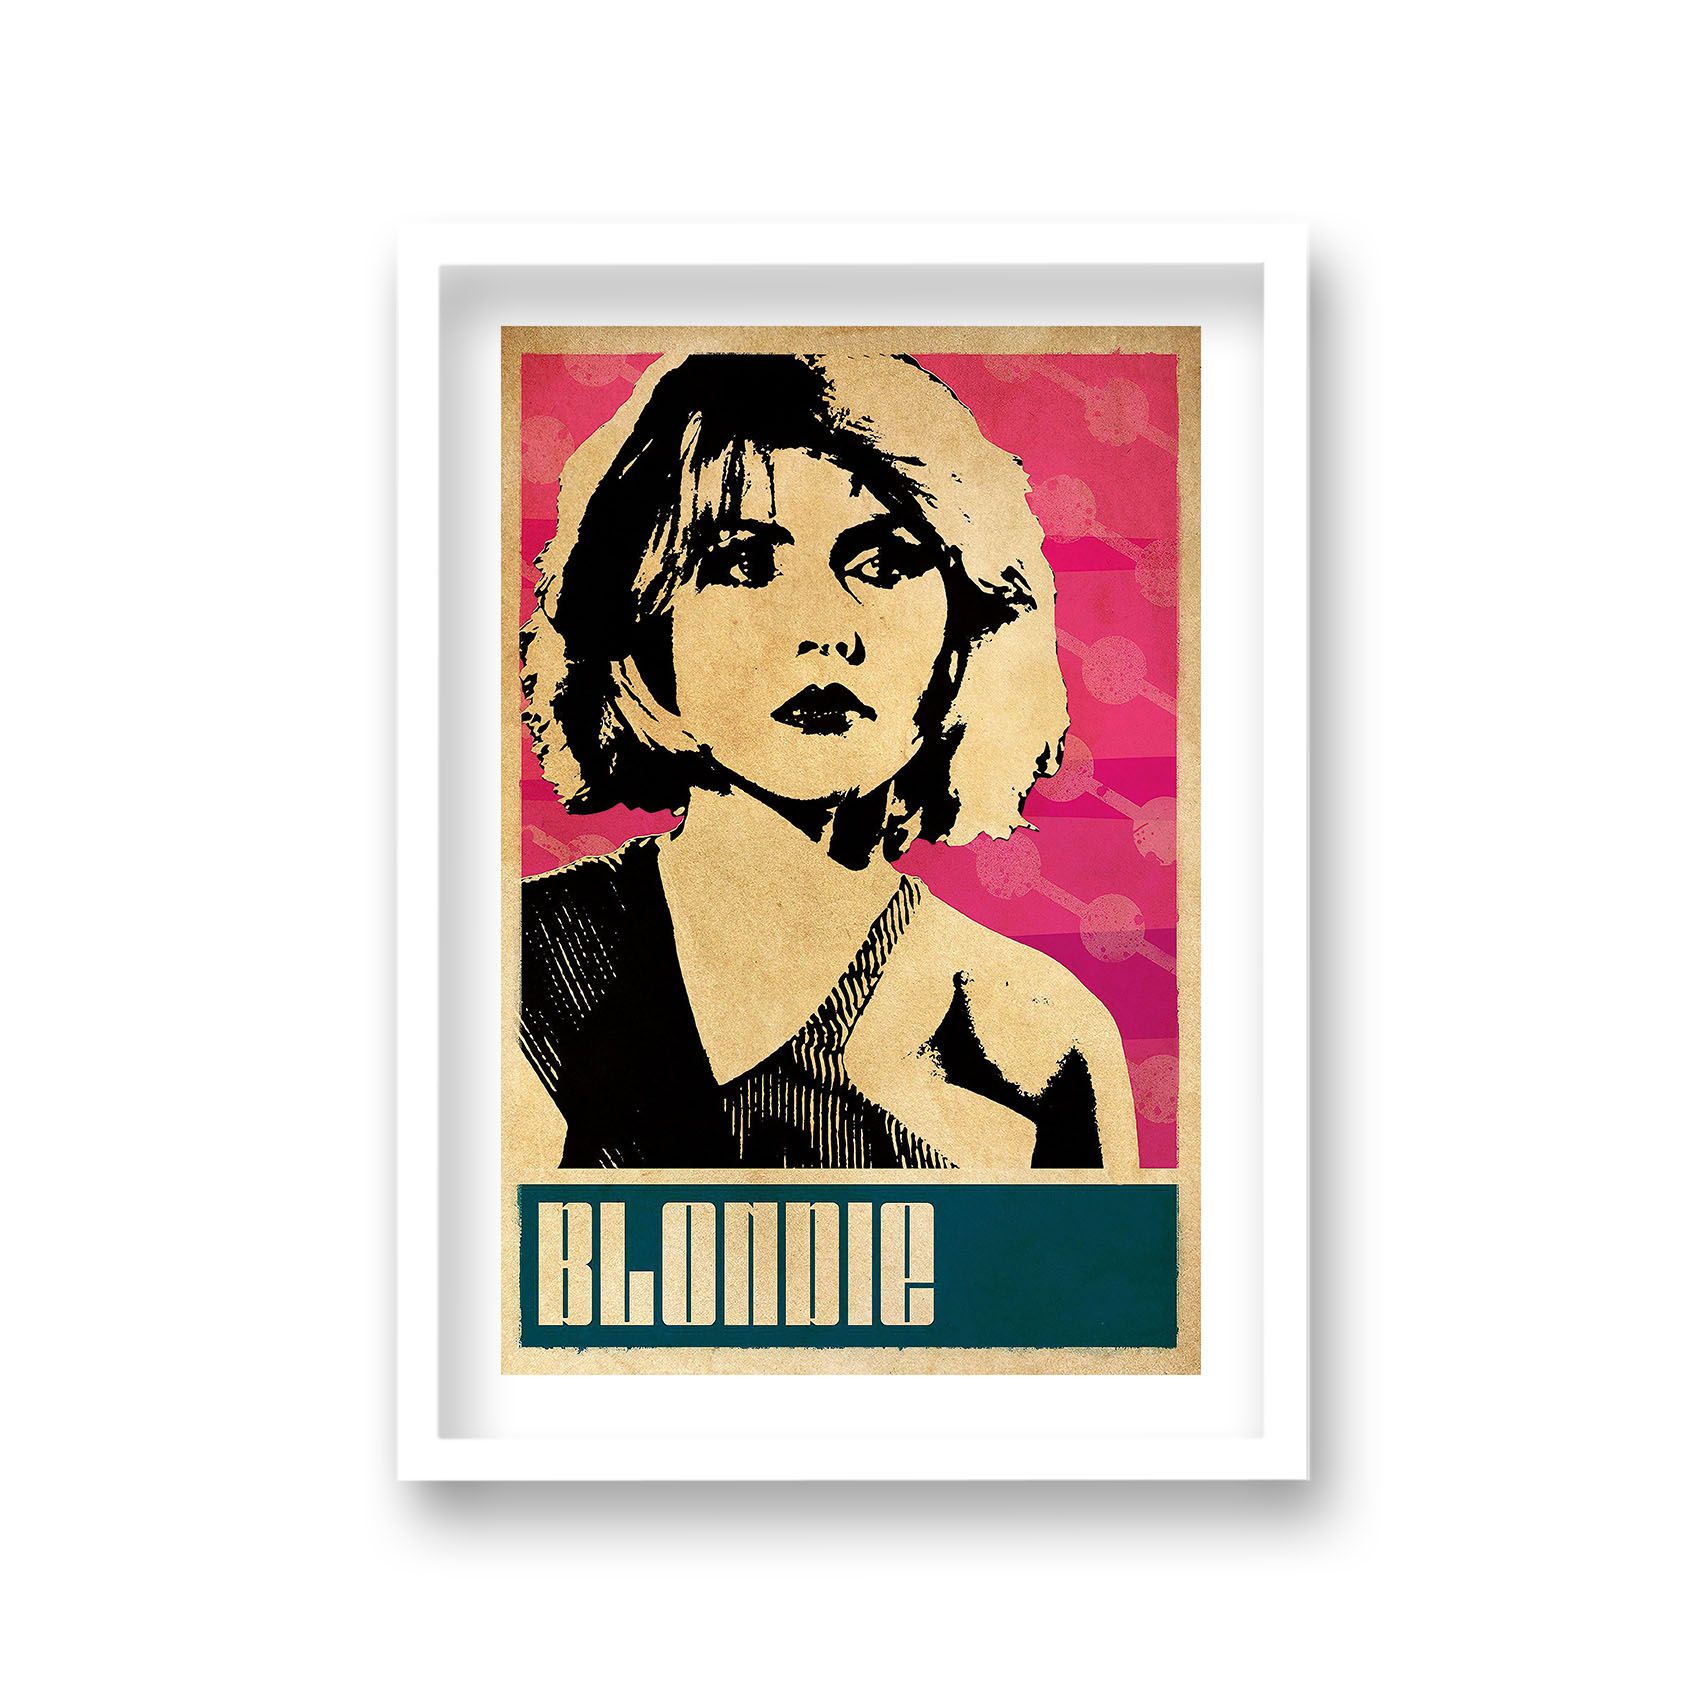 Blondie Debbie Harry Pop Art Promotional Poster